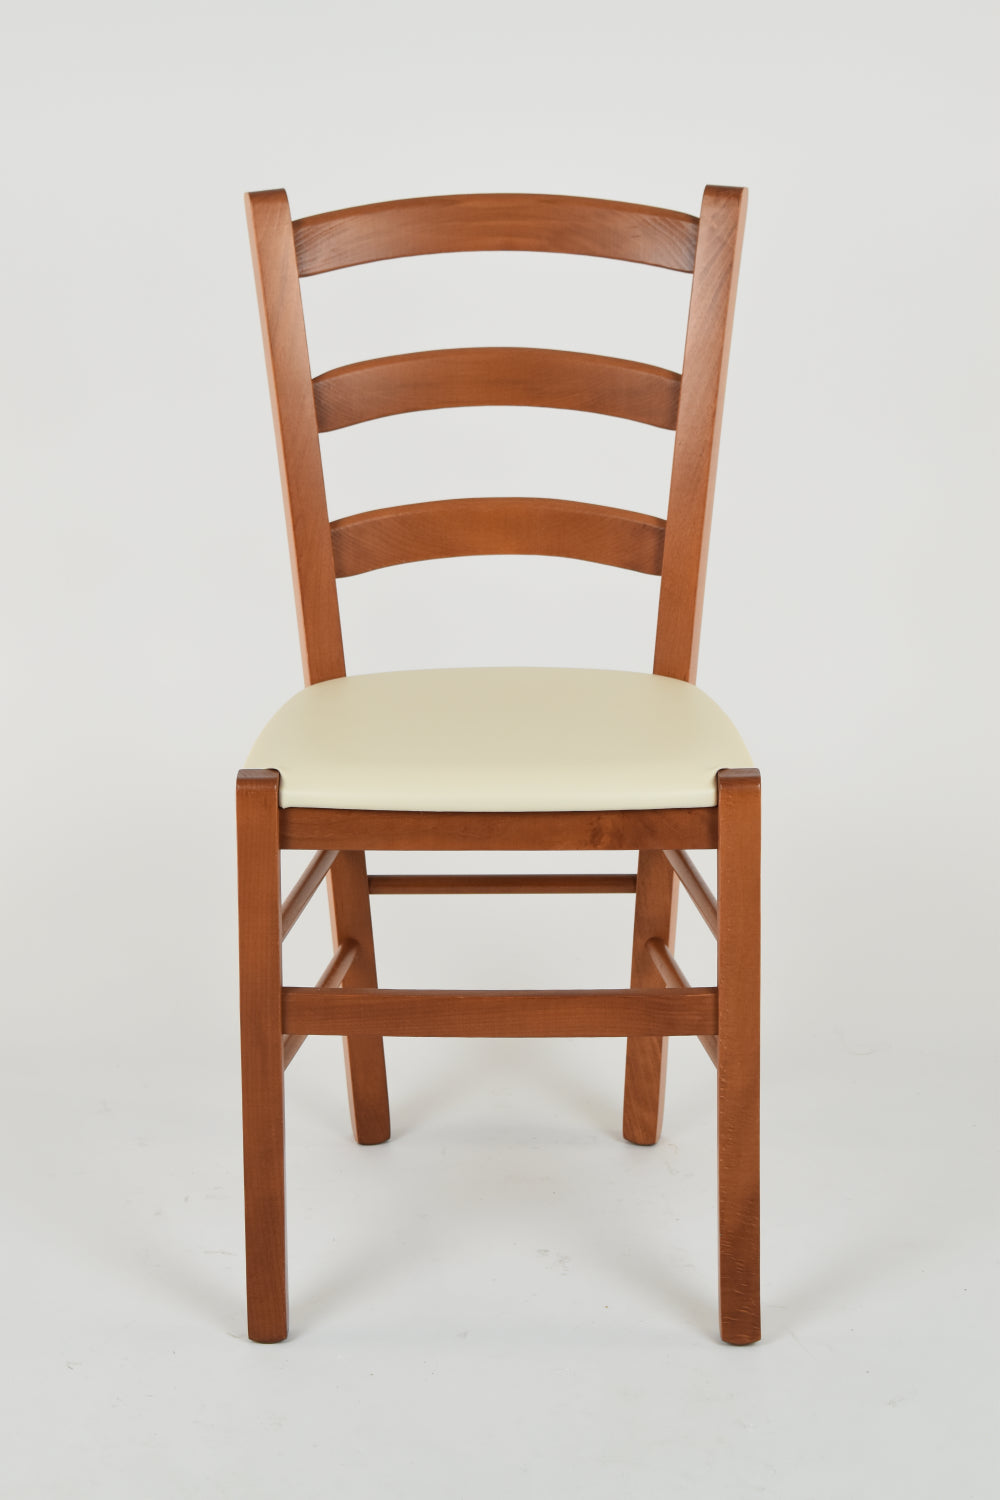 Tommychairs - Set 4 sillas de Cocina y Comedor Venice, Estructura en Madera de Haya Color Cerezo y Asiento tapizado en Polipiel Color Marfil